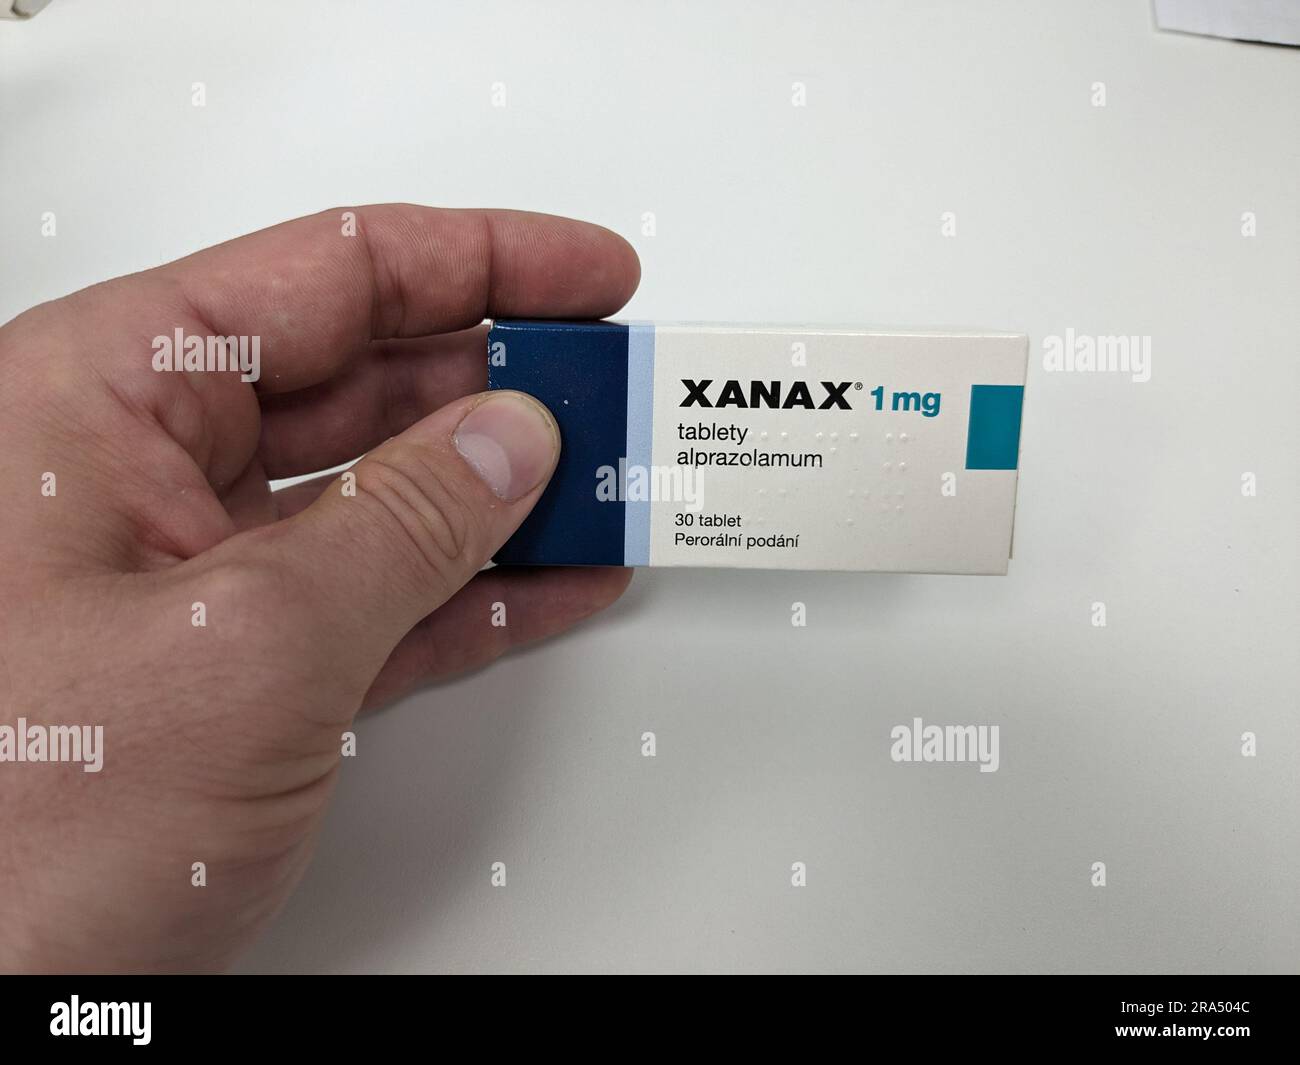 Xanax píldoras con sustancia activa Alprazolam, ansiolíticos antidepresivos medicamentos de terapia, es una droga popular para abusar y tiene valor callejero Pfizer Foto de stock